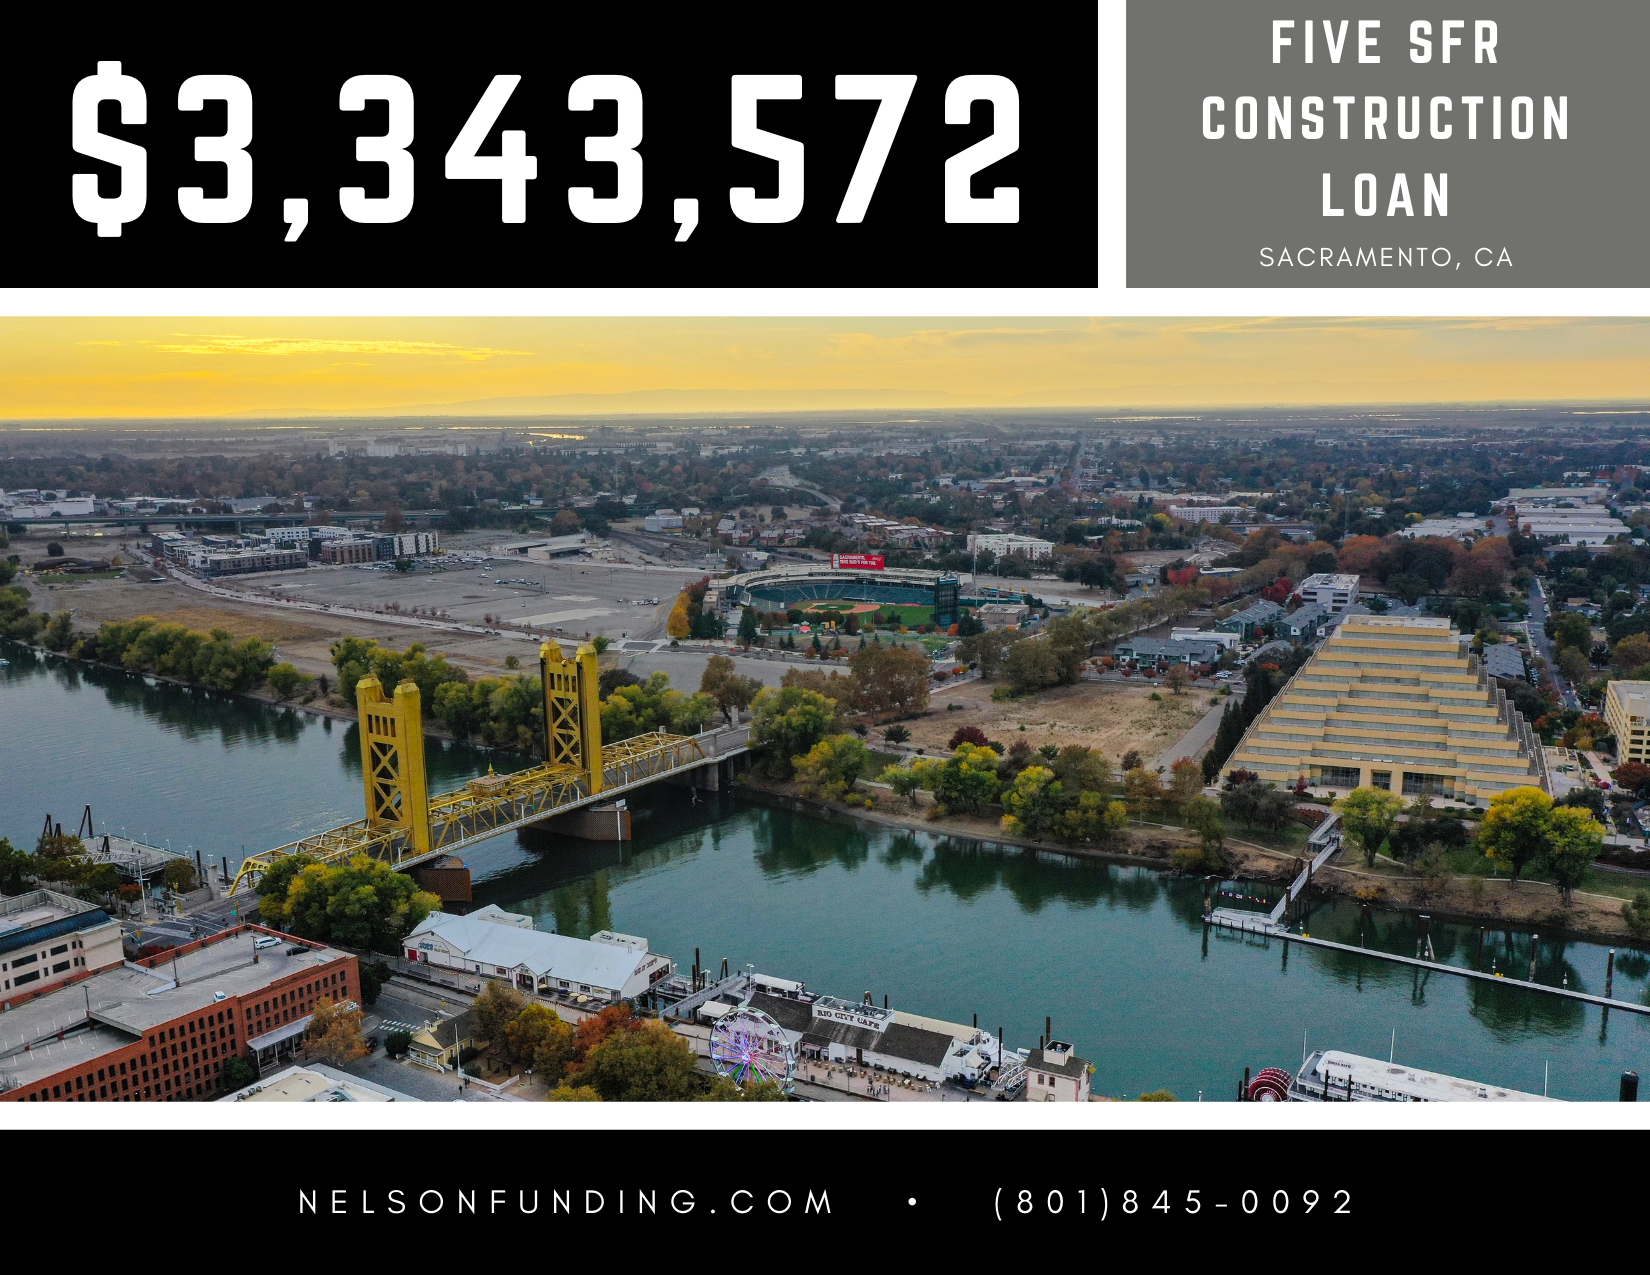 Sacramento Construction Loan Closing